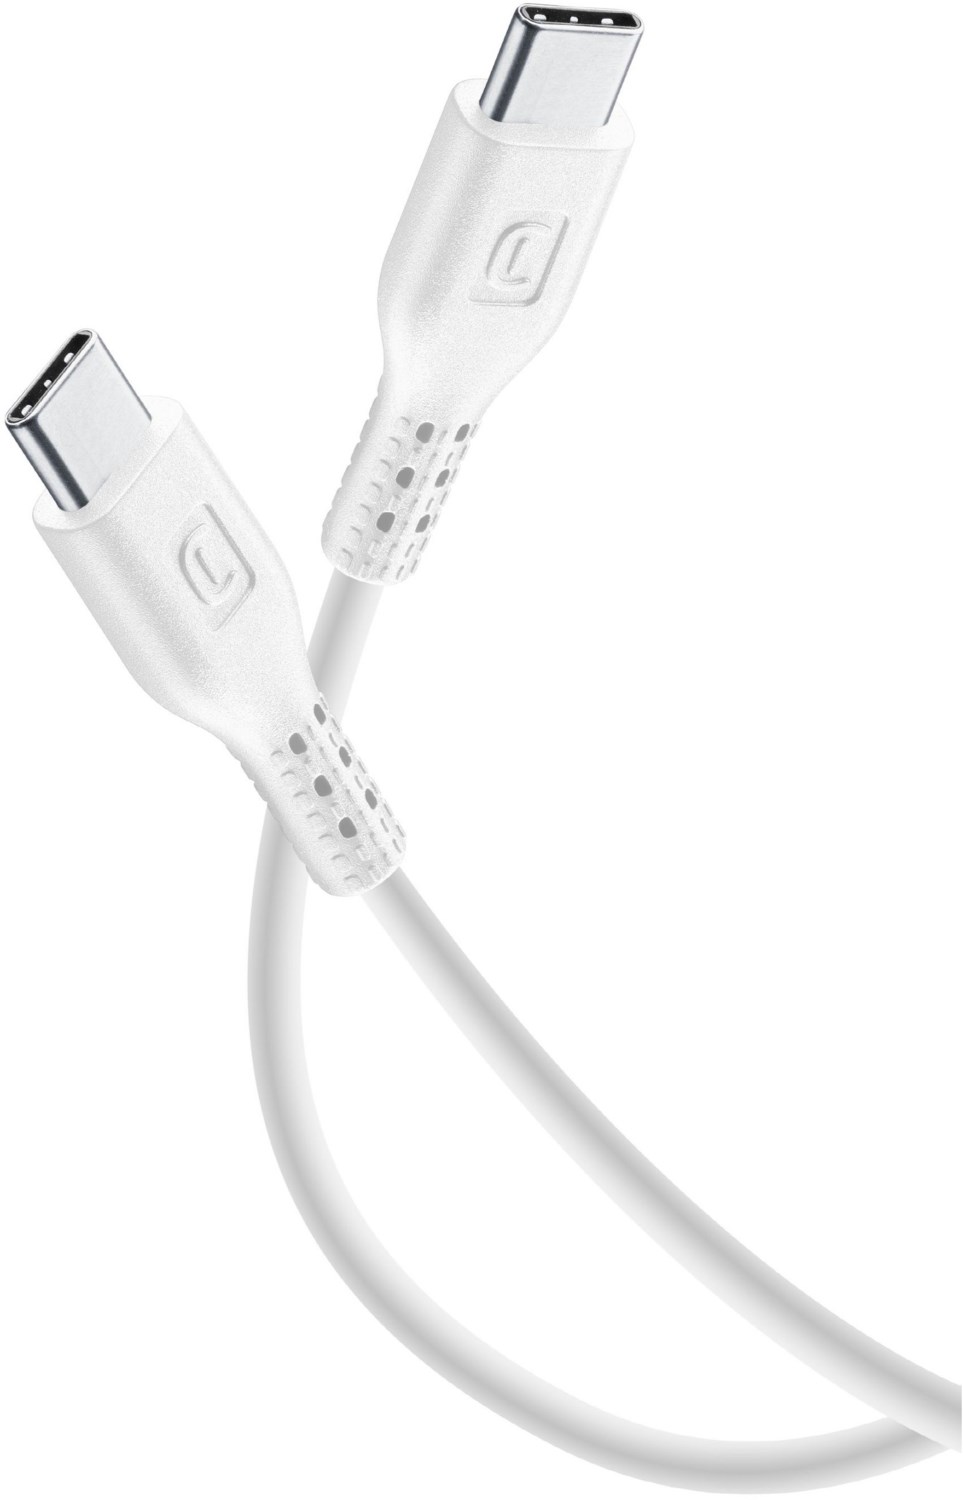 USB Type-C Kabel (2m) weiß